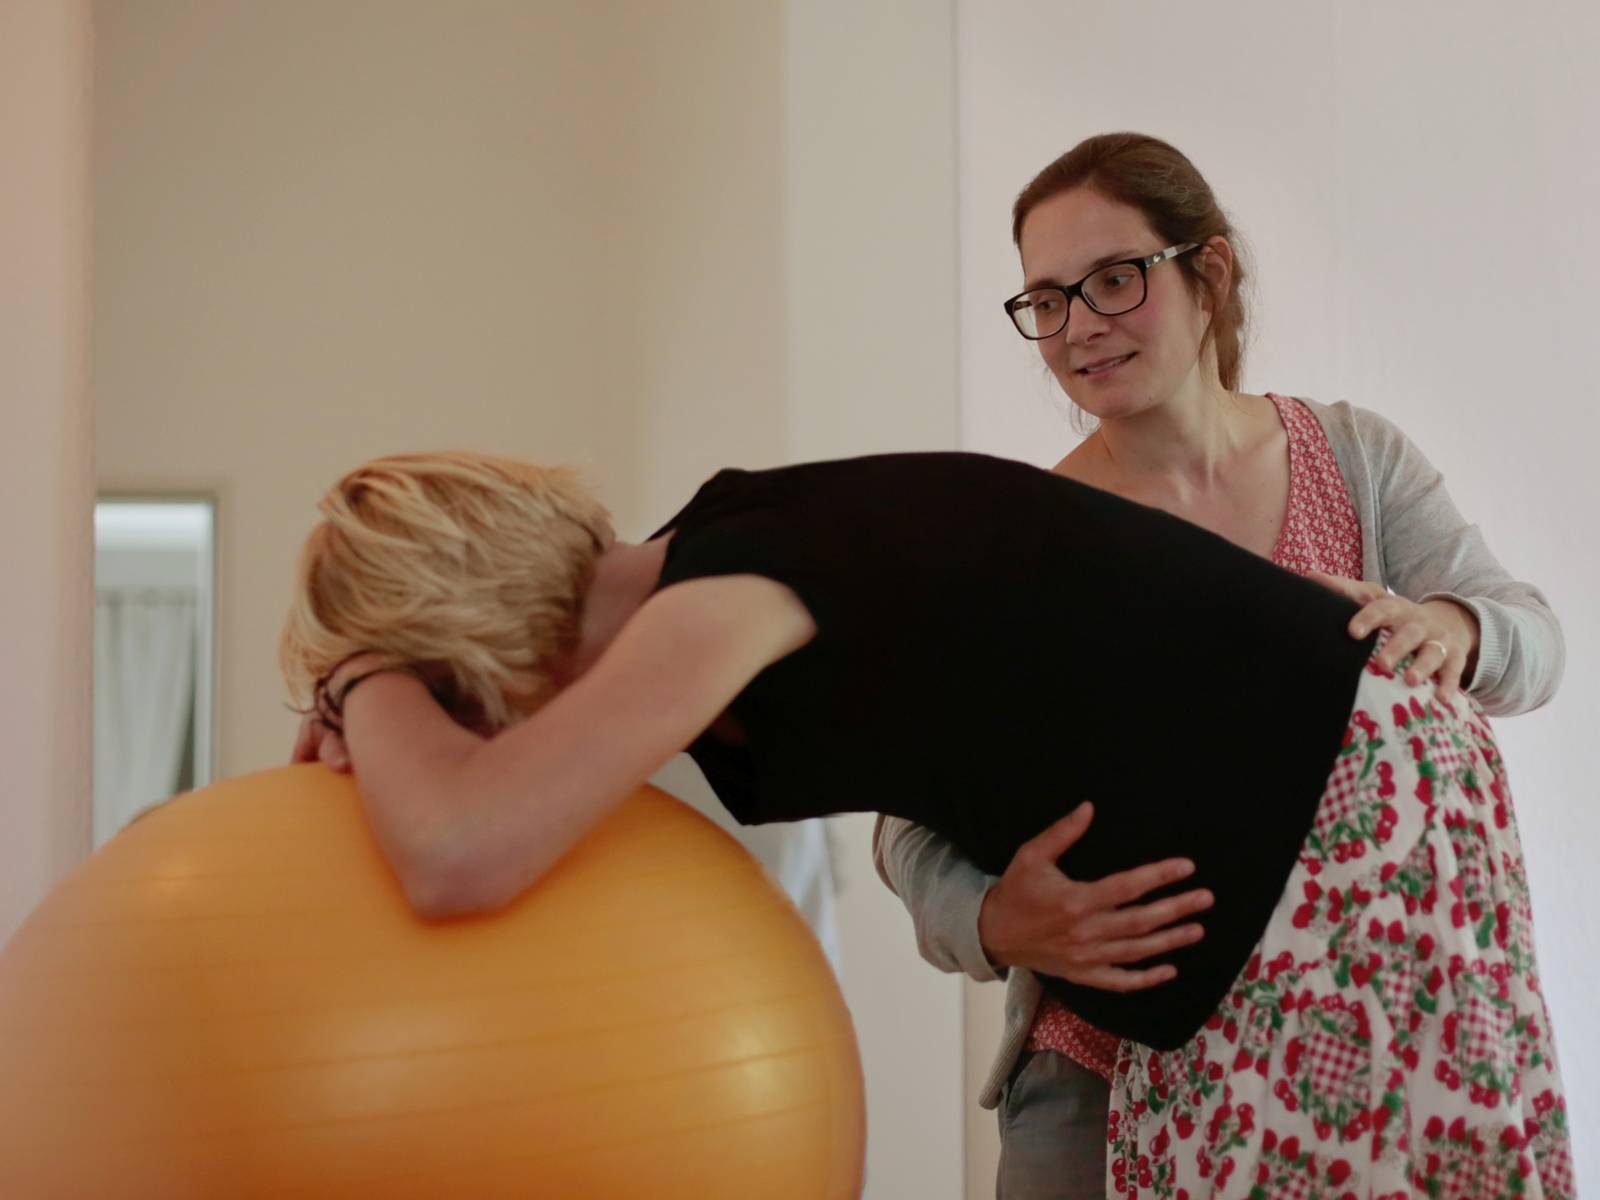 Zwei Frauen, von denen eine sich auf einem Gymnastikball aufstützt, während die andere sie hält